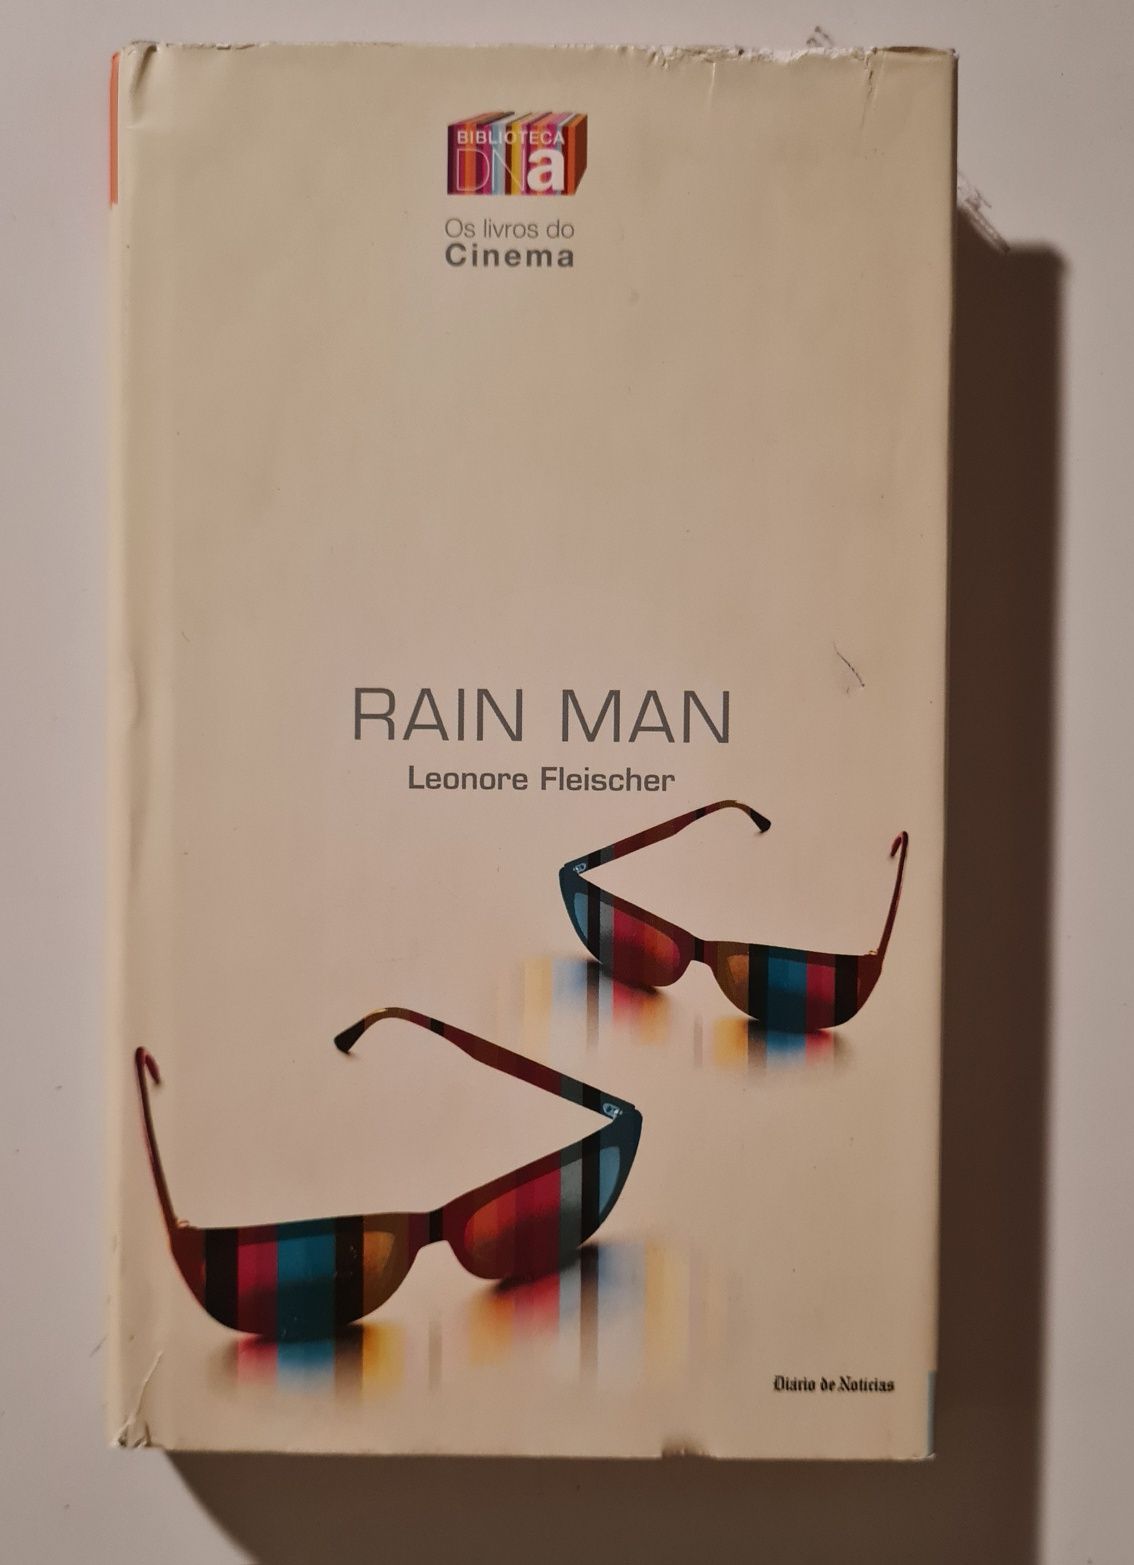 Livro: Rain Man - Leonore Fleischer
RAIN MAN - Leonore Fleischer
RAIN